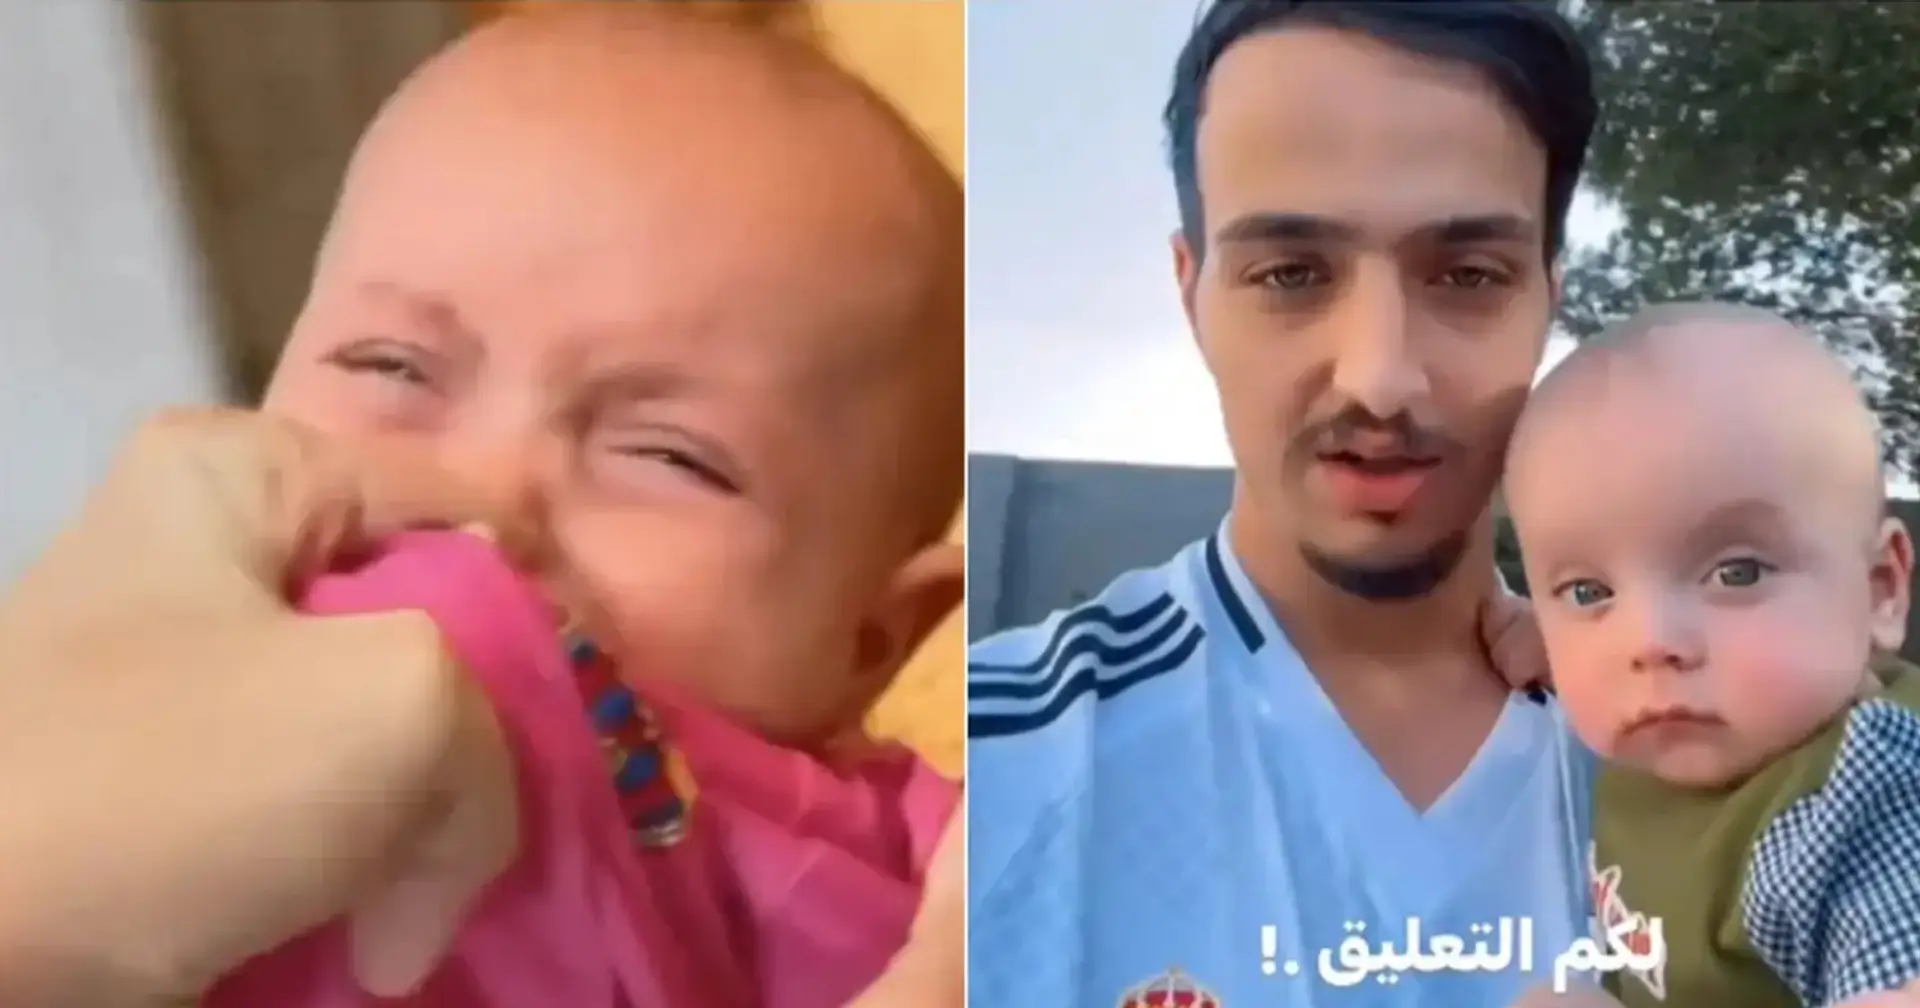 Ein Baby im Barcelona-Trikot wurde im Irak geschlagen: Es gibt eine Version, dass dies von seinem Onkel getan wurde, der Real Madrid unterstützt 